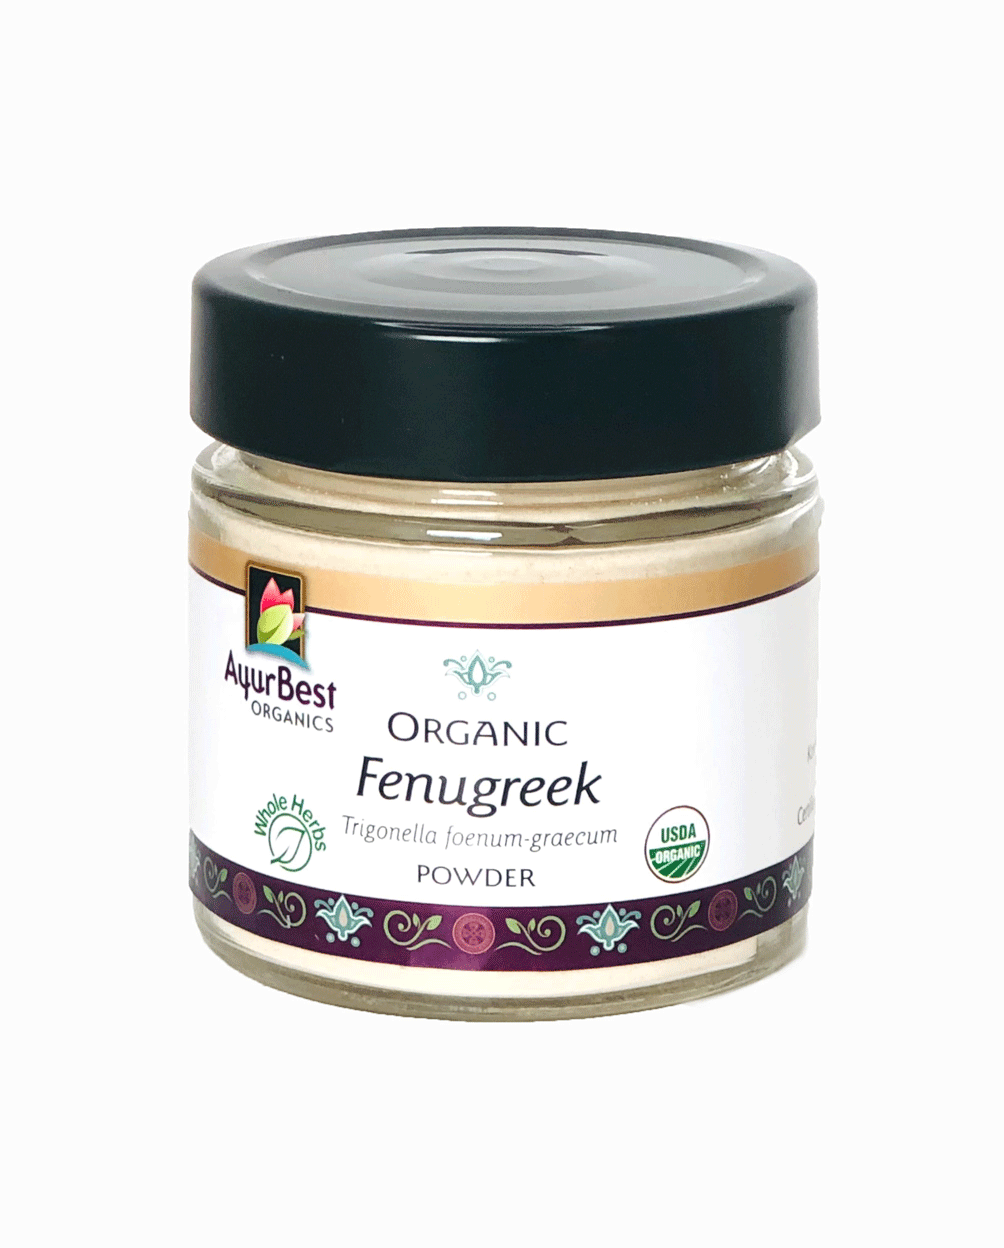 Buy Organic Fenugreek Seed Powder 3.7oz Jars!